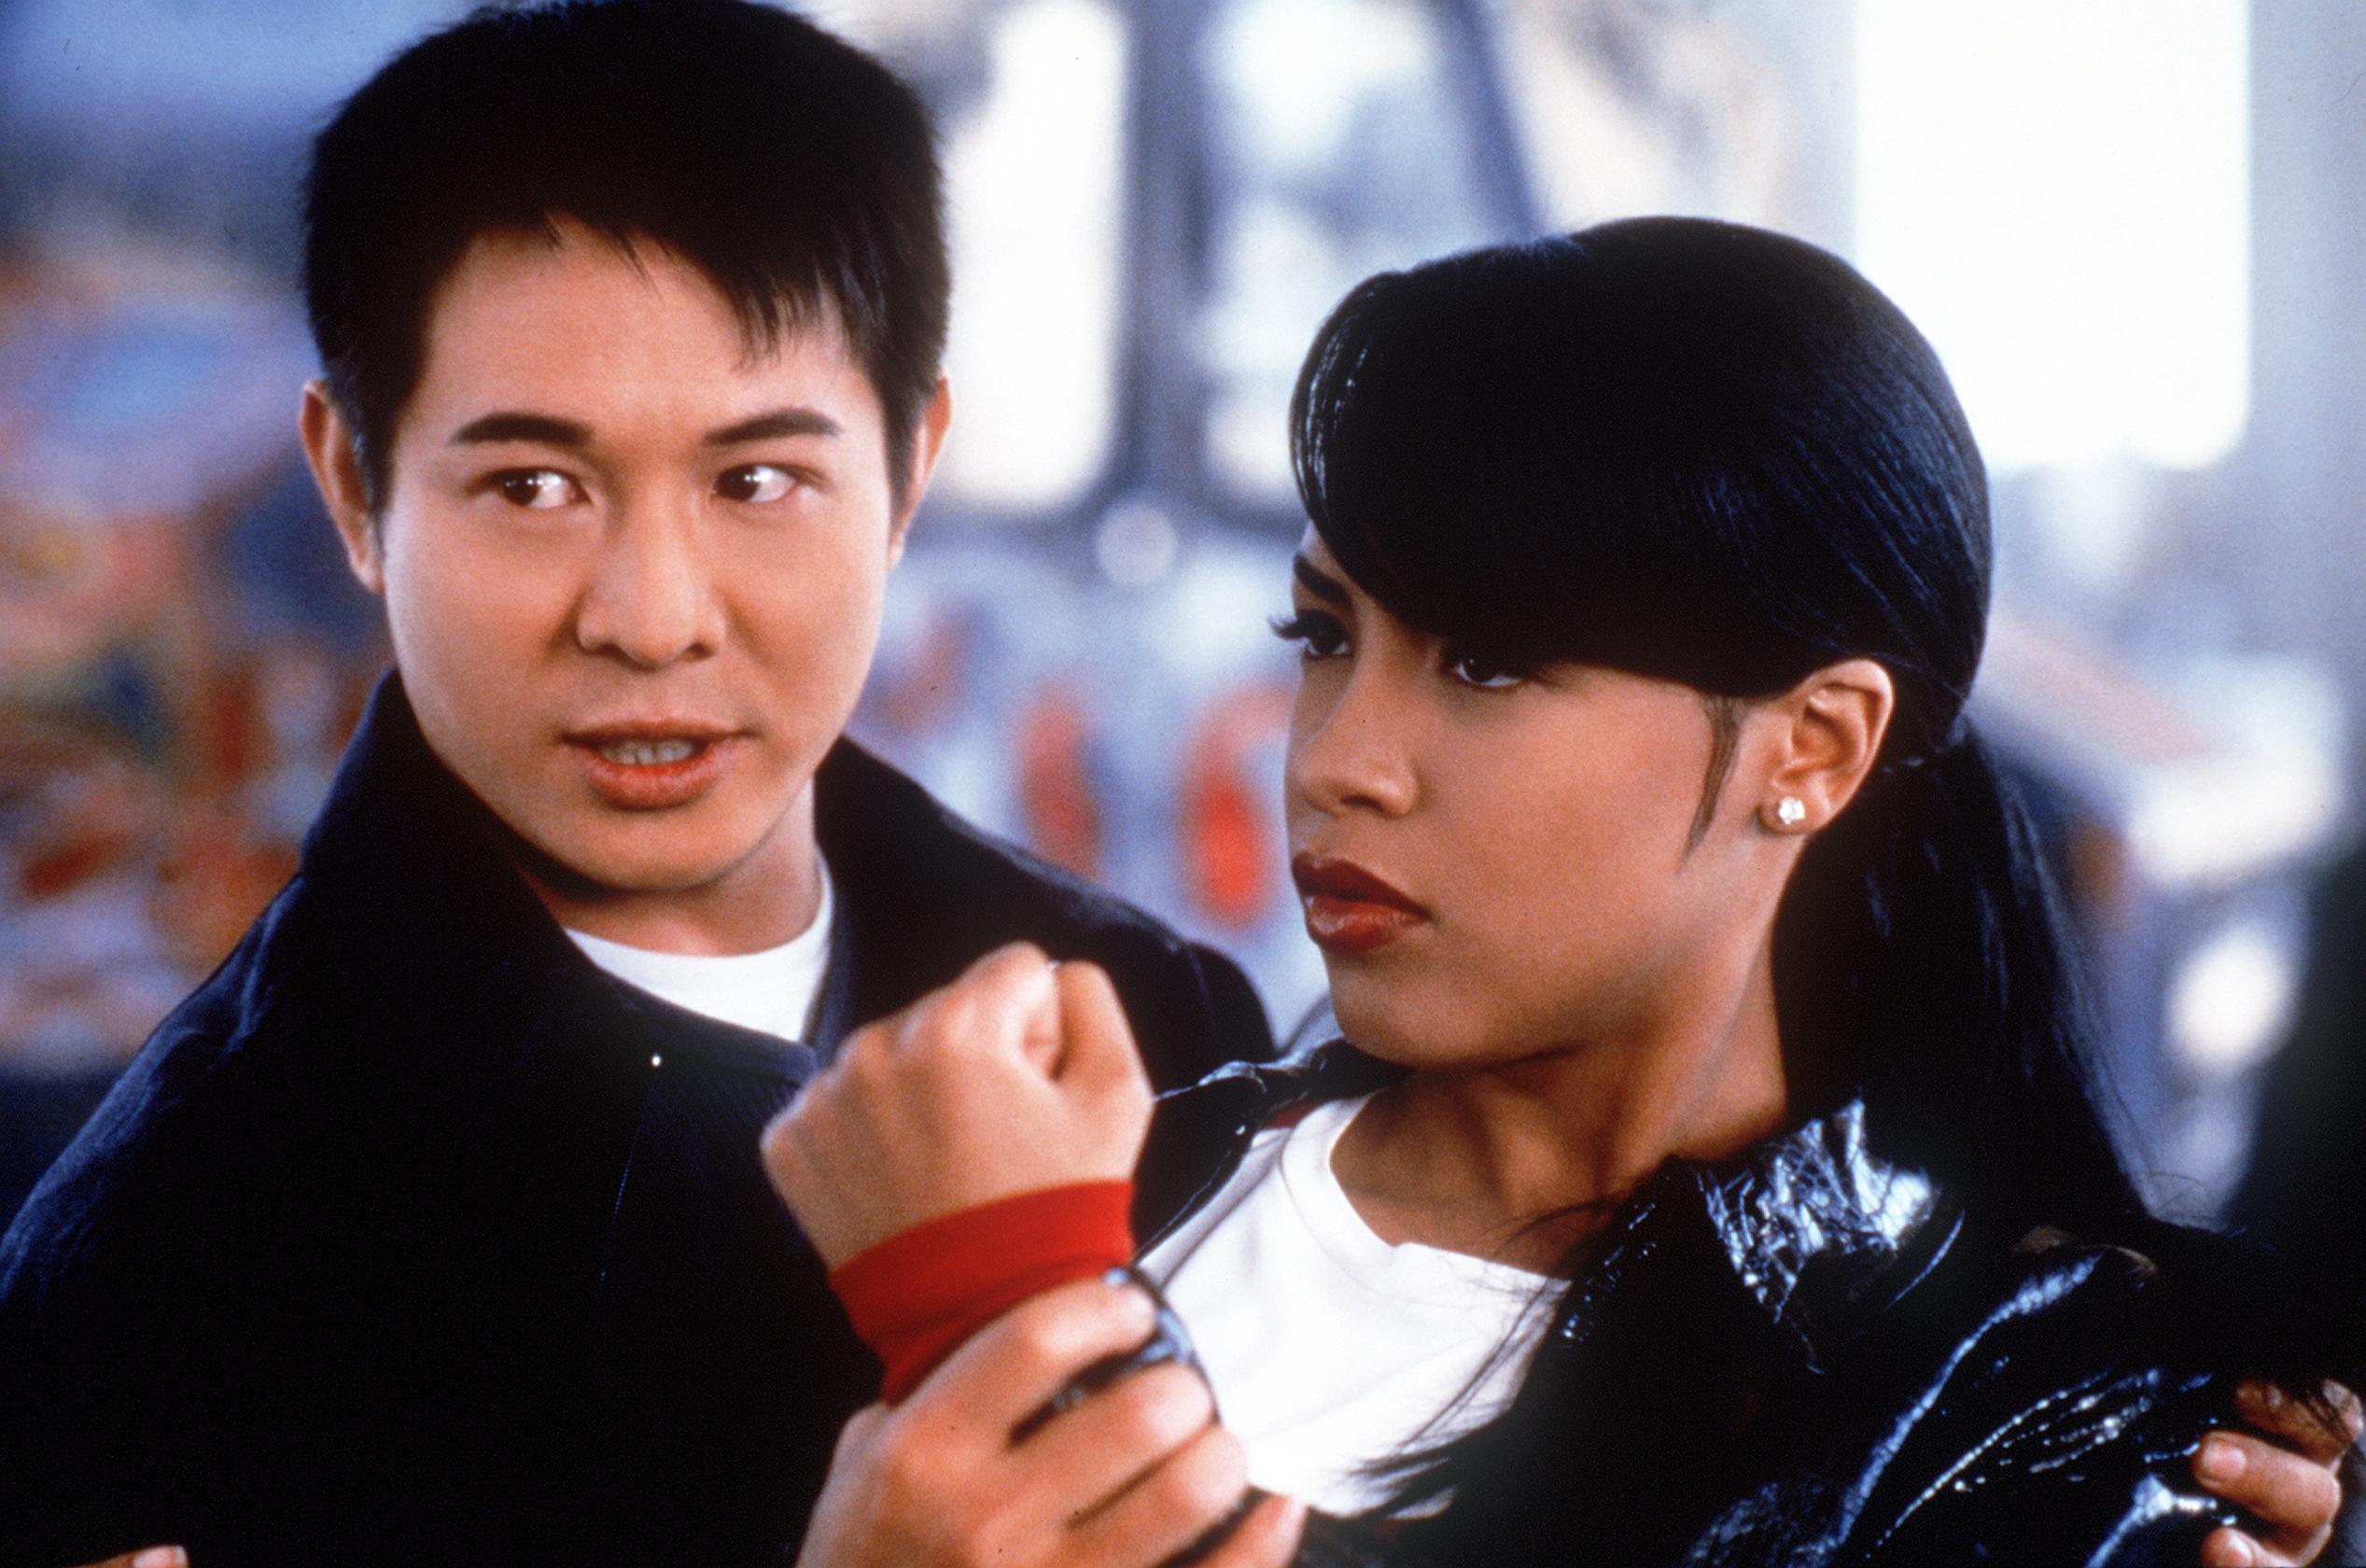 Jet Li and Aaliyah star in "Romeo Must Die" 